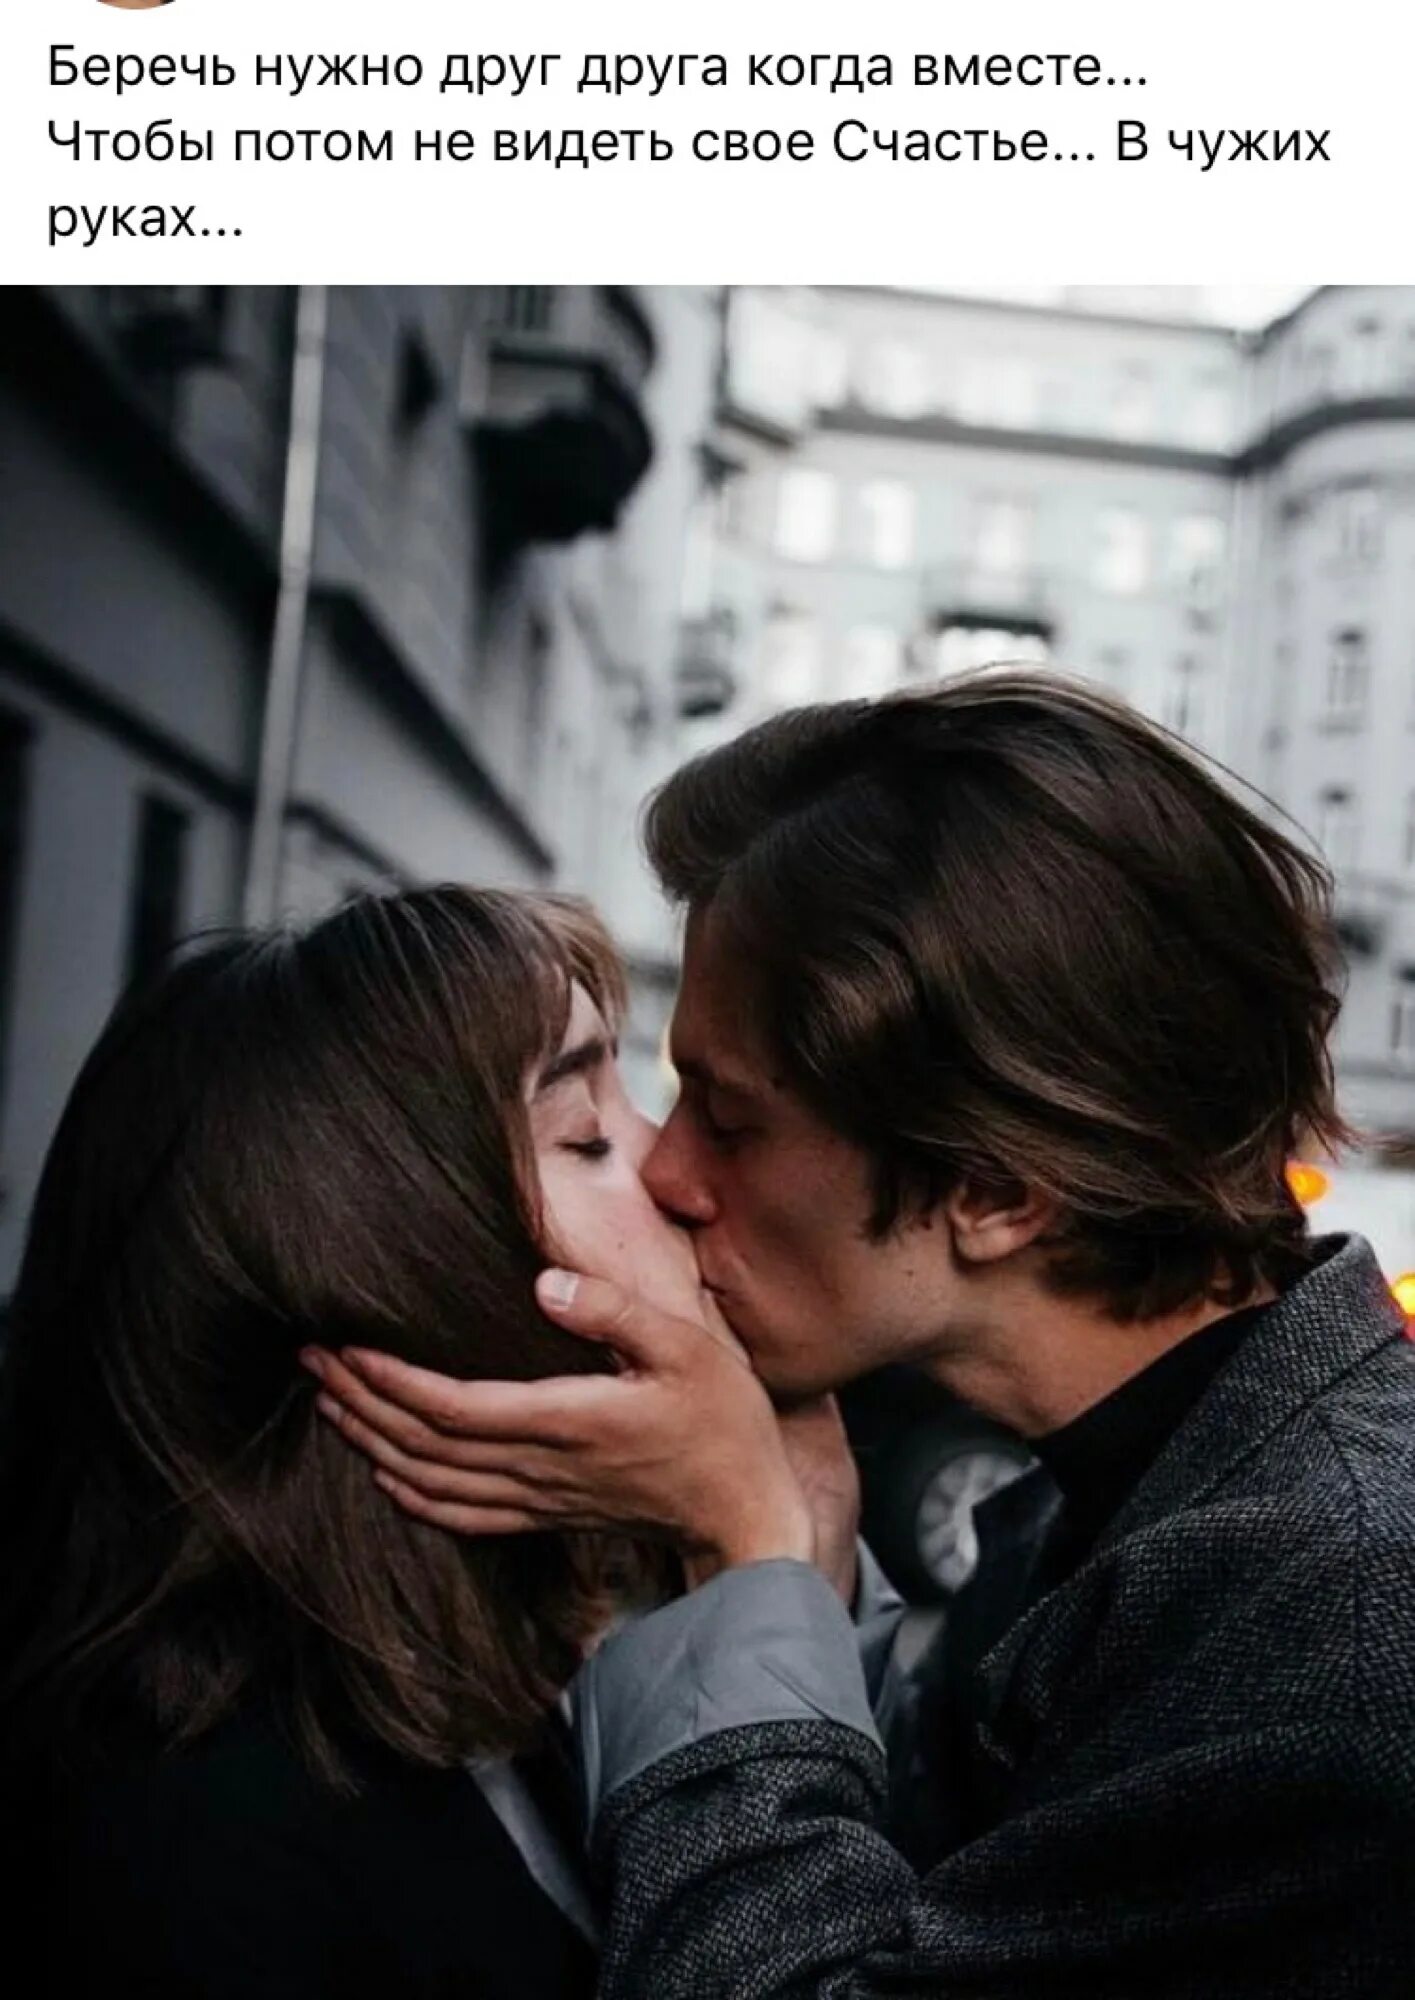 Скольки лет можно целоваться в губы. Первый поцелуй. Как правильно целоваться. КПК прпвильно целоваться?. Научите целоваться.